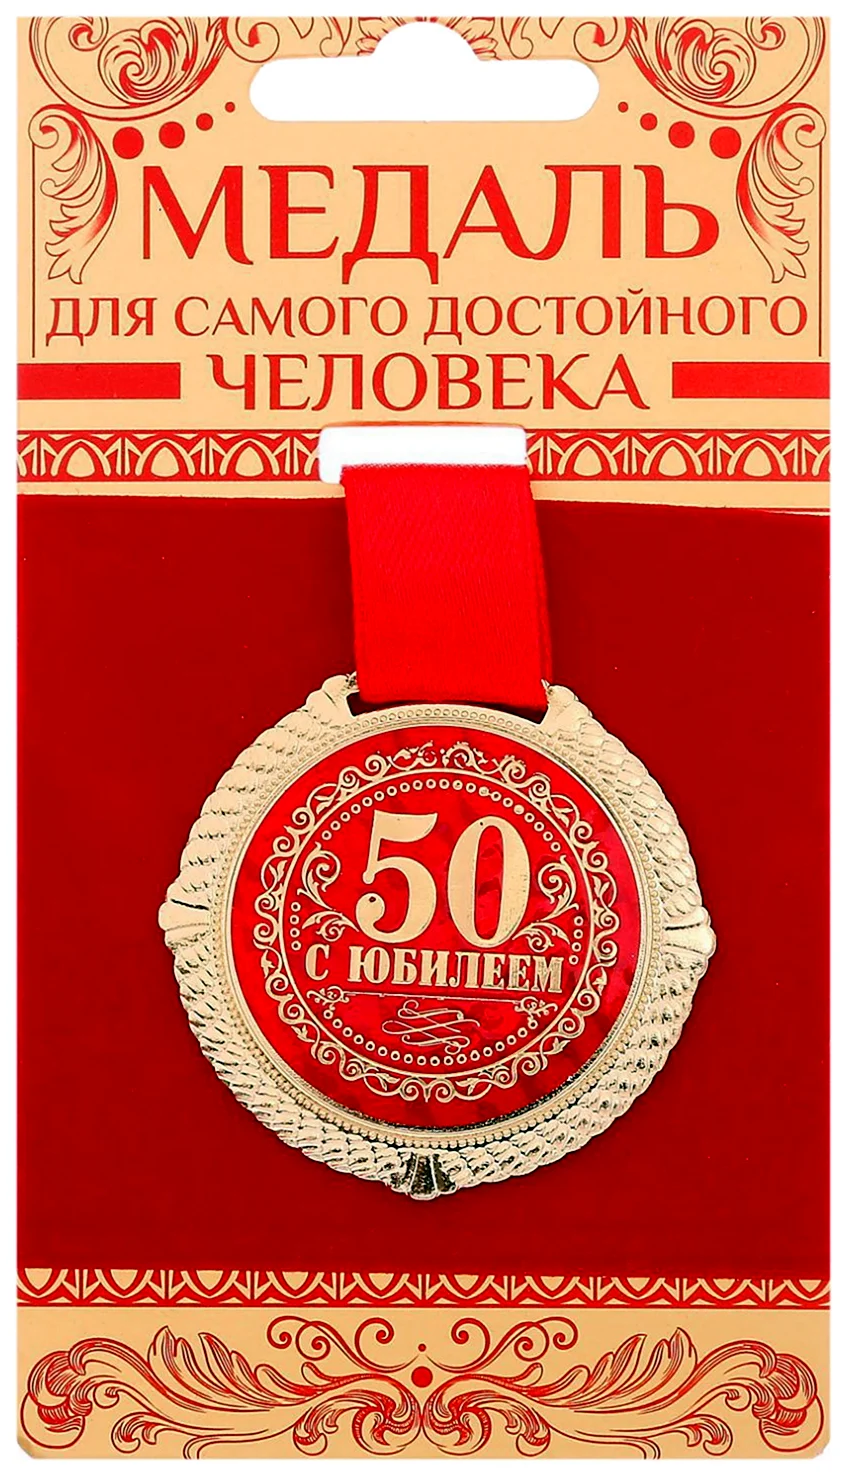 Медаль с юбилеем 60 лет. Открытка для мужчины